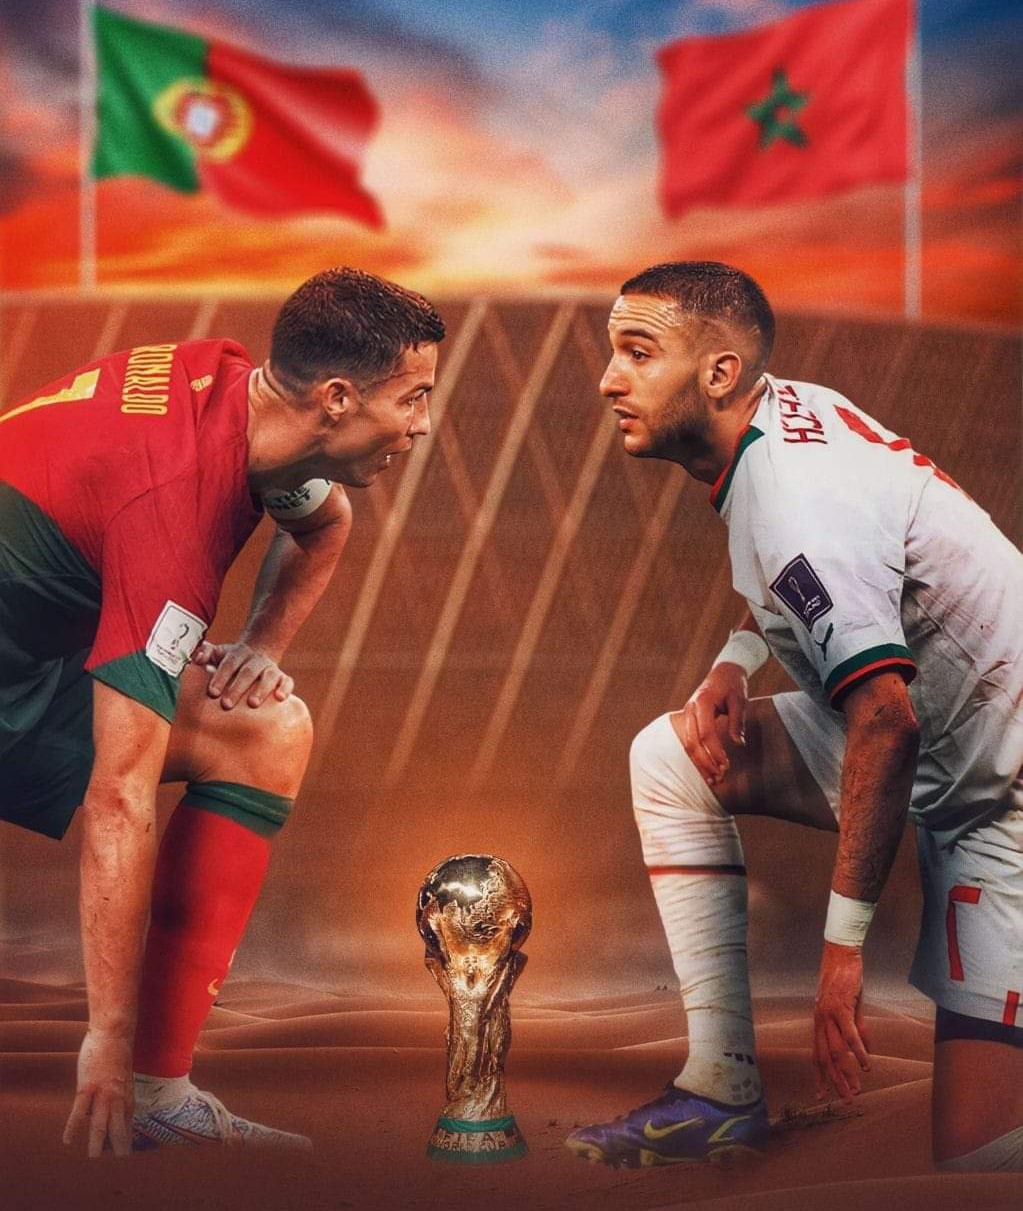 مشاهدة مباراة المغرب والبرتغال بث مباشر bein sports بدون تقطيع اليوم 10-12-2022 في كأس العالم 2022